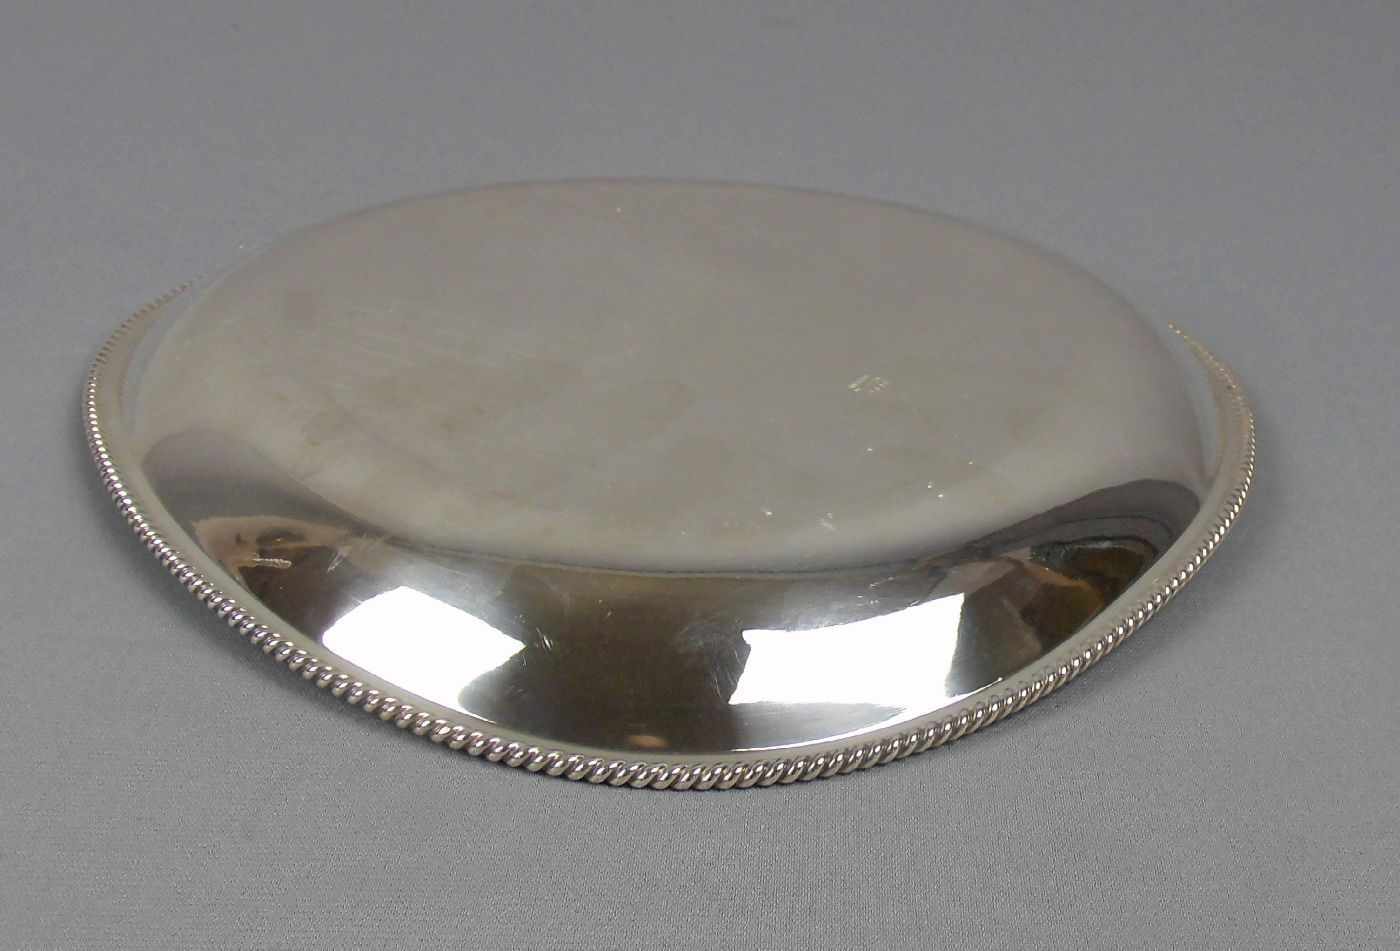 DREIPASSIGE SCHALE / silver bowl, 835er Silber (376 g), deutsch, gepunzt mit Halbmond, Krone, - Image 5 of 5